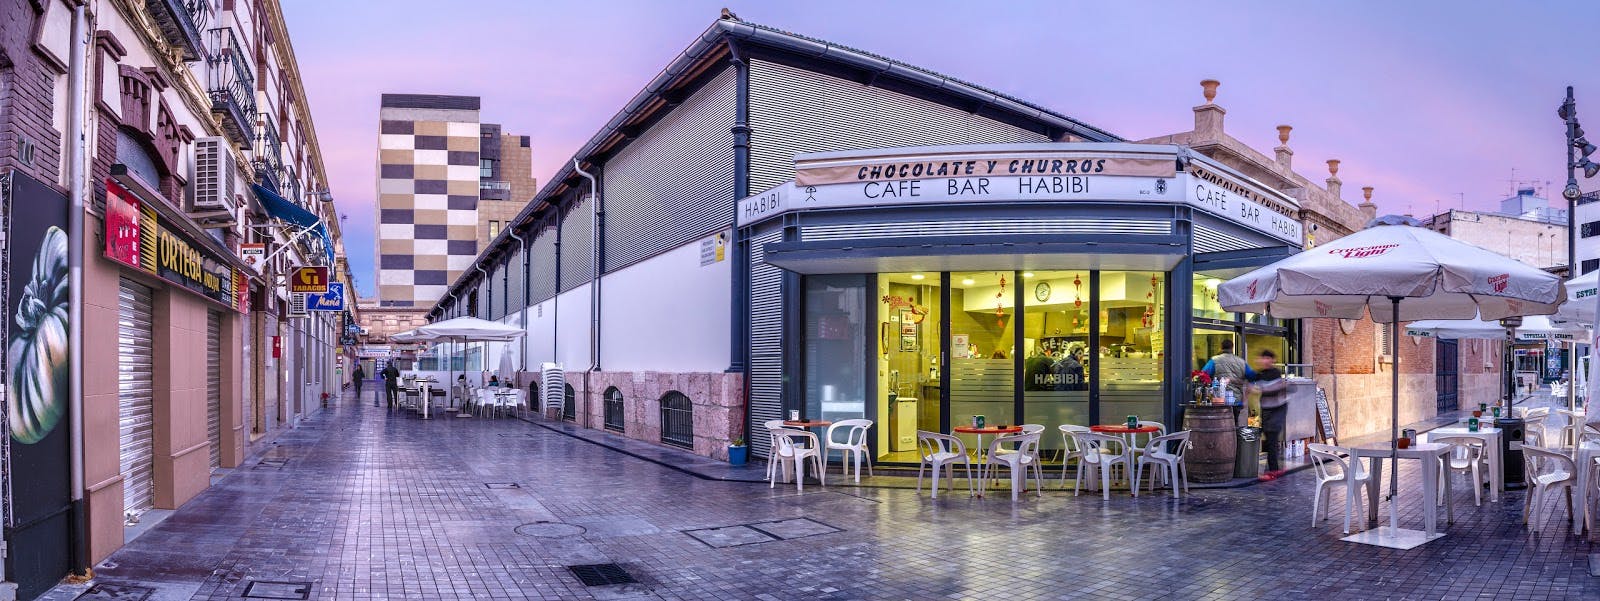 Image - Almería Central Market